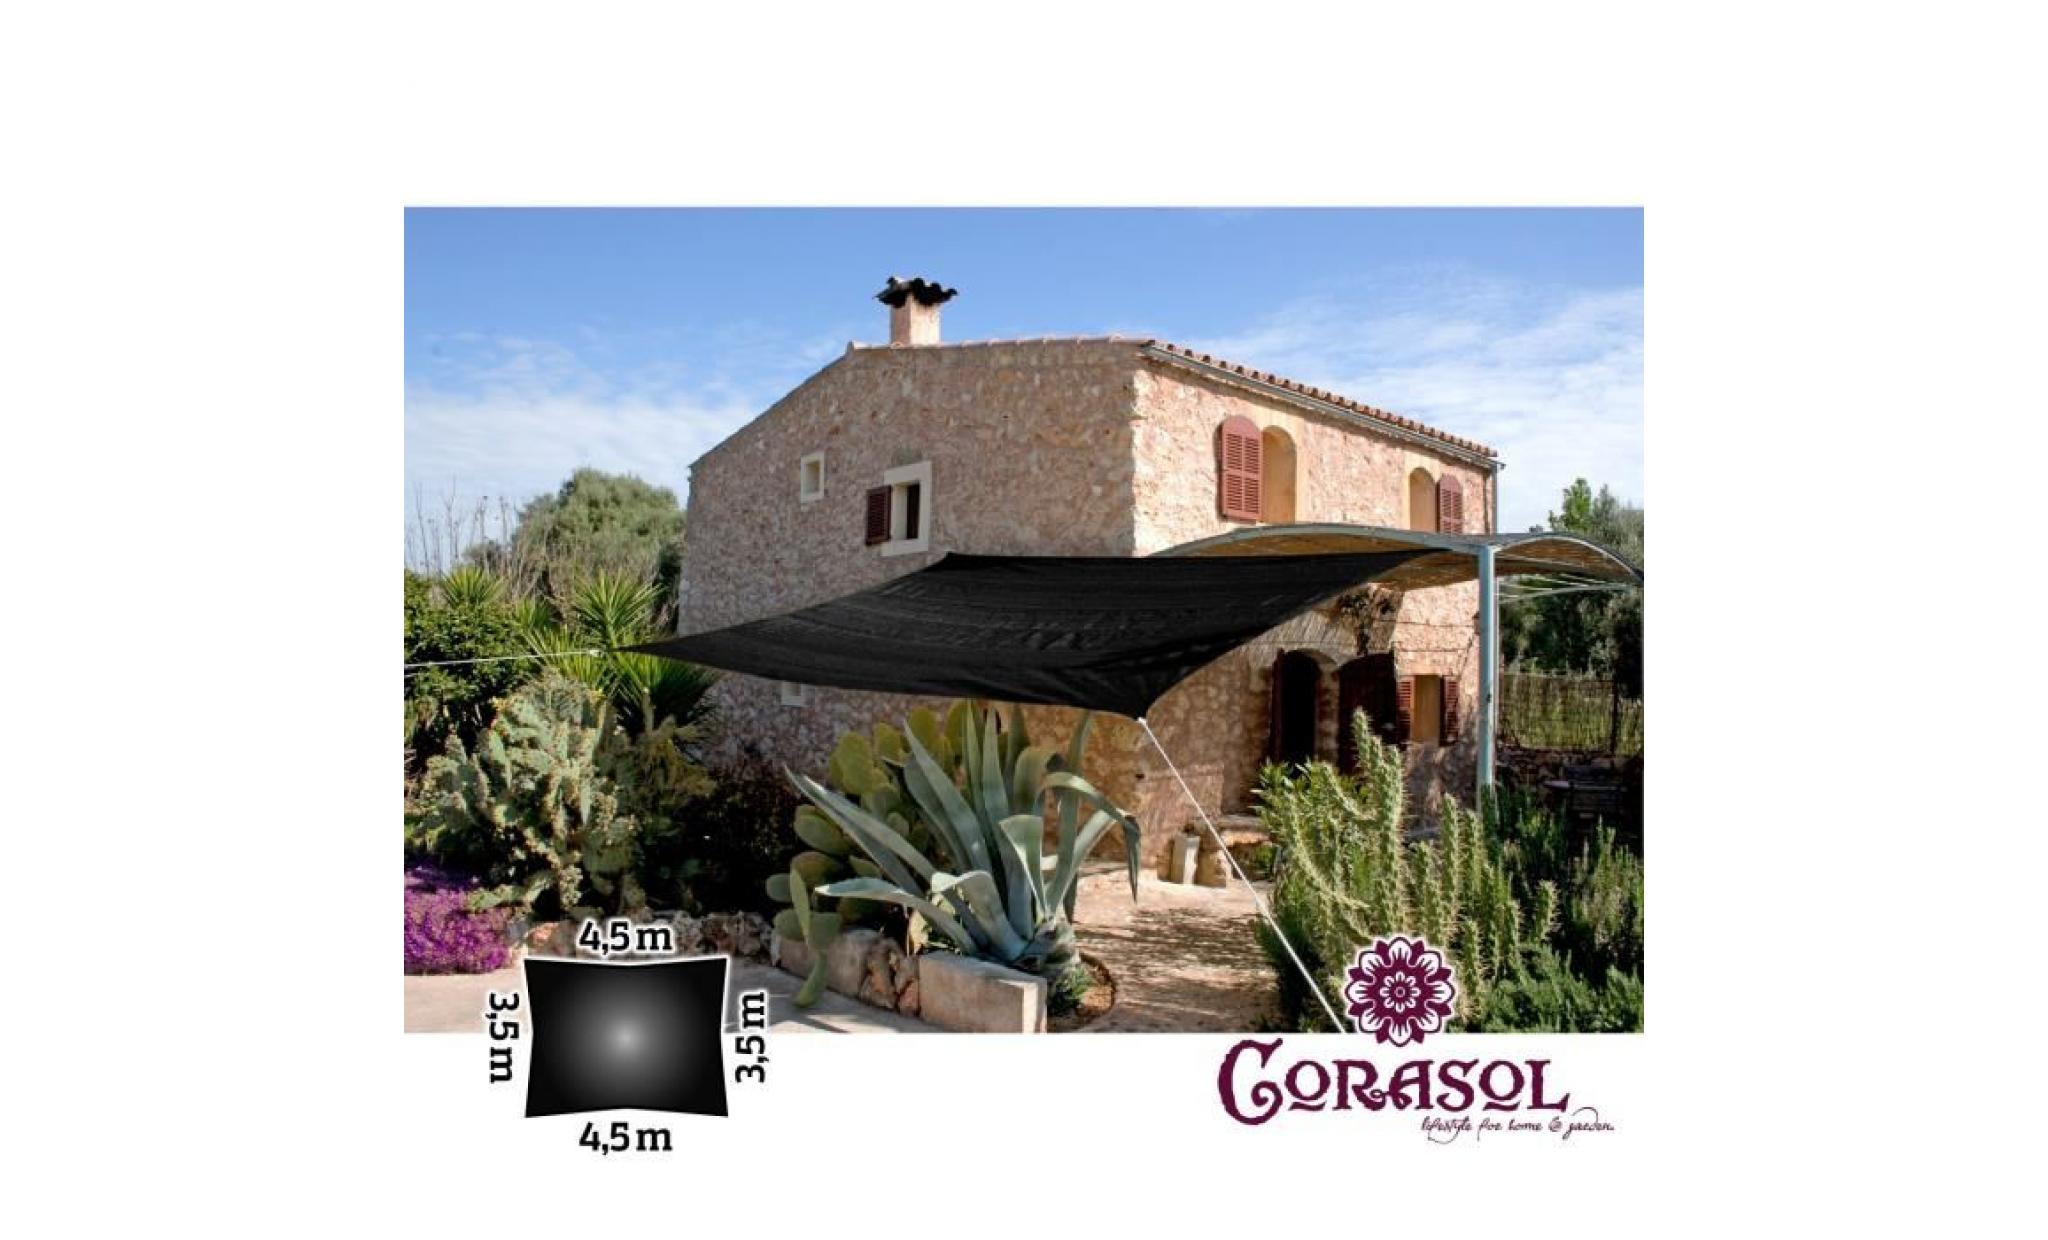 Corasol COR10RE35X45-BK voile d'ombrage premium, 3,5x4,5m, rectangulaire, noir (1 pièce) pas cher